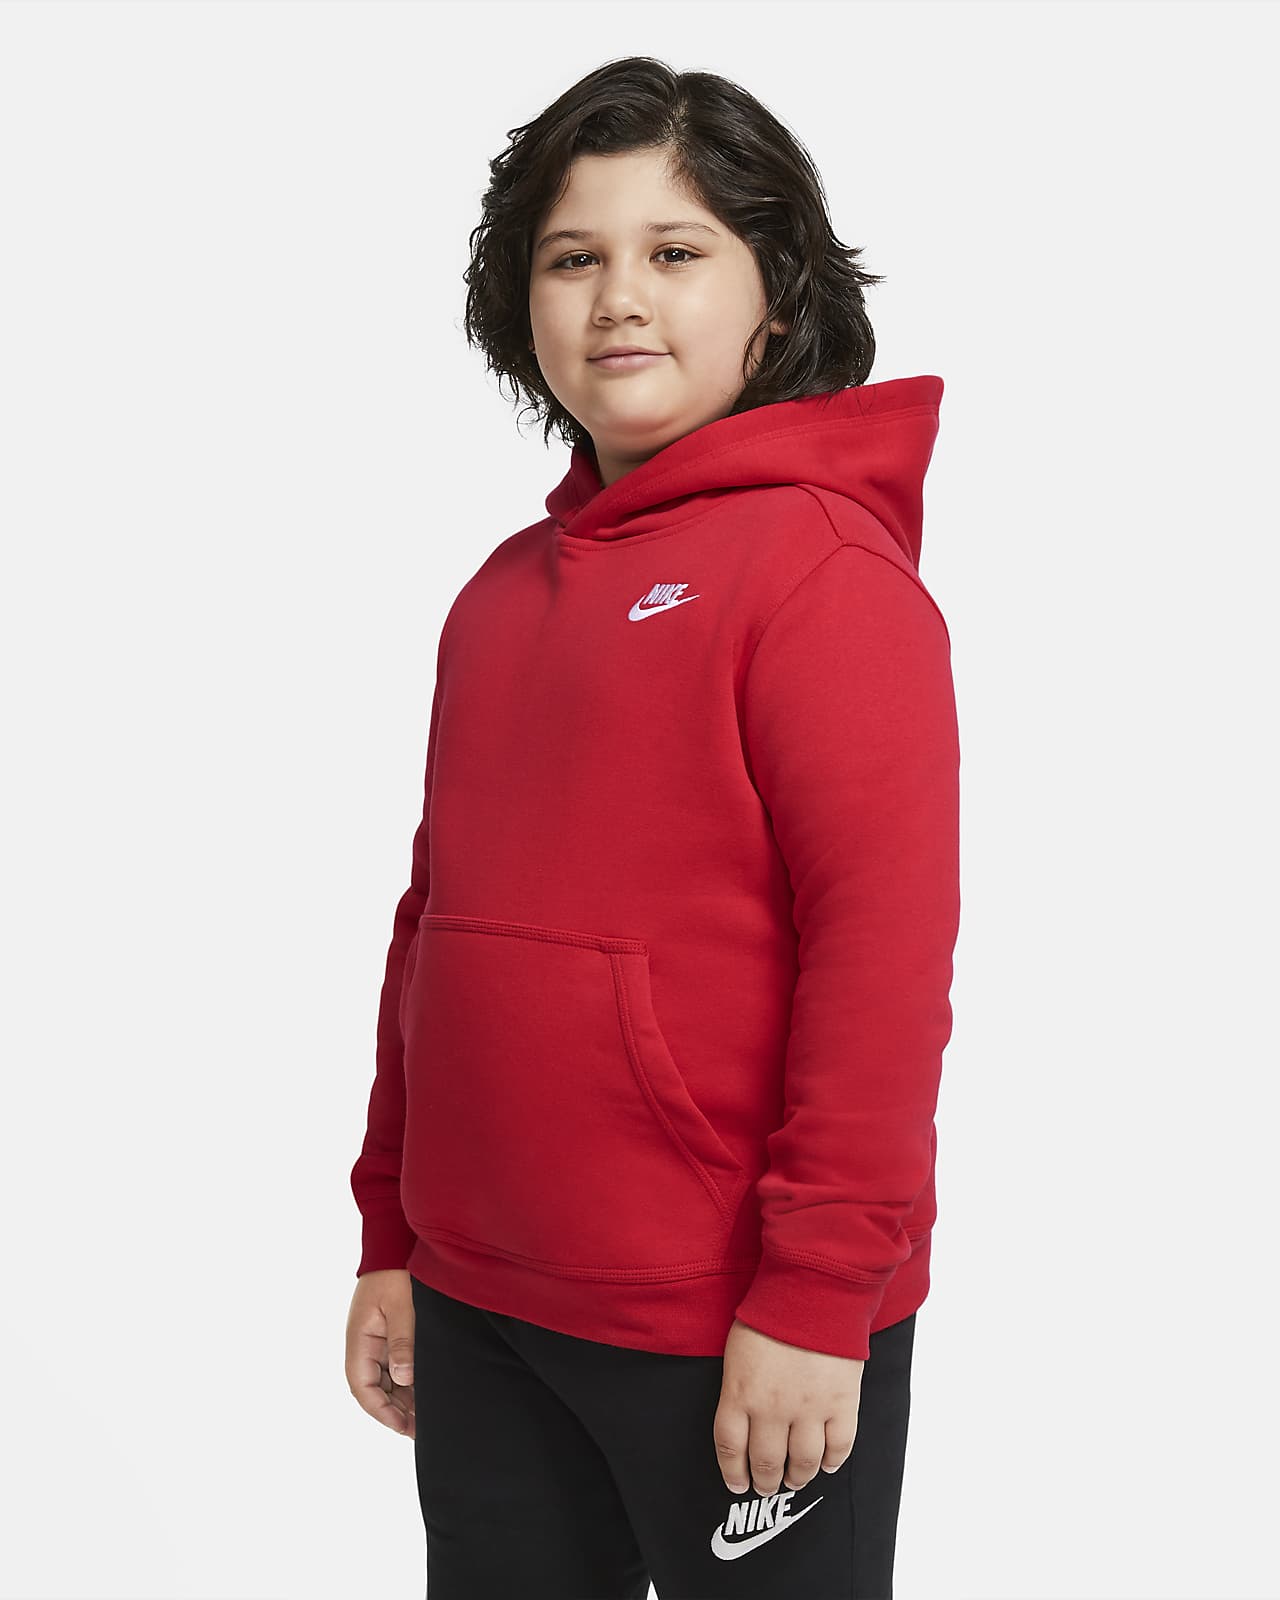 Nike Sportswear Club Fleece Older Kids' (Boys') Pullover Hoodie ...